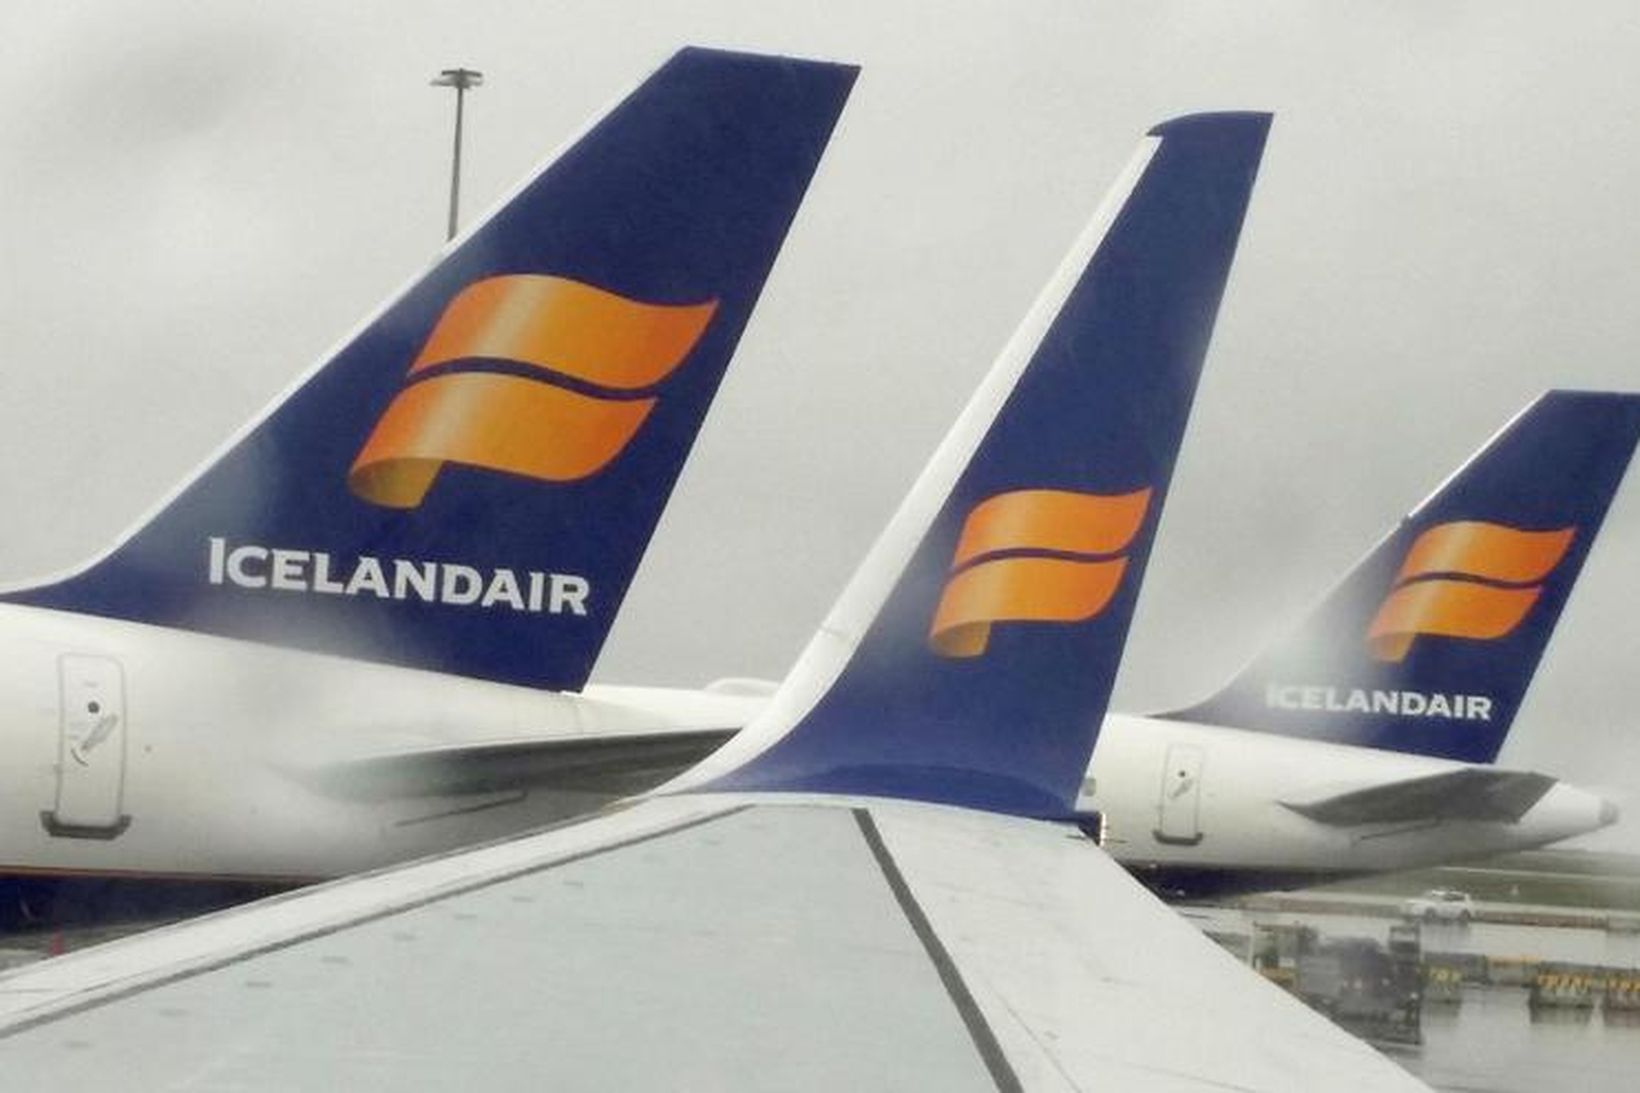 Veikindin hafi gert vart við sig í mörgum vélum Icelandair …